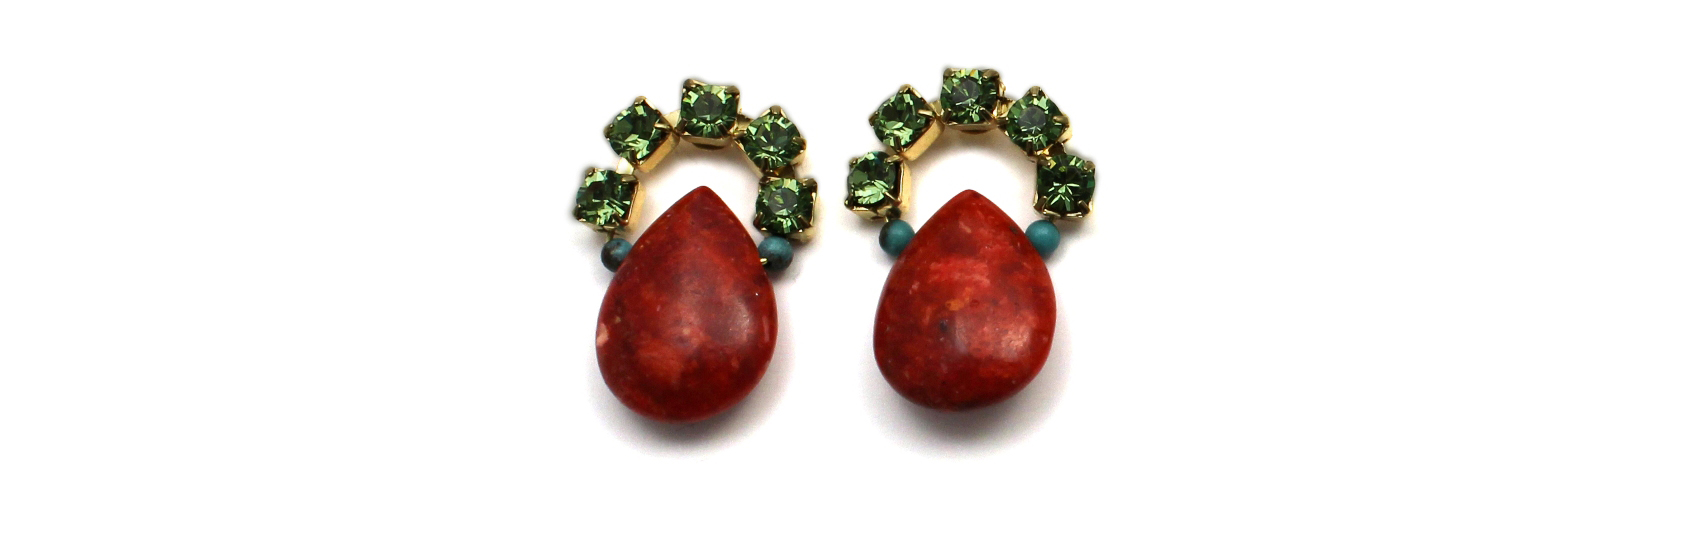 102 Peridot & Red Coral Earrings.jpg